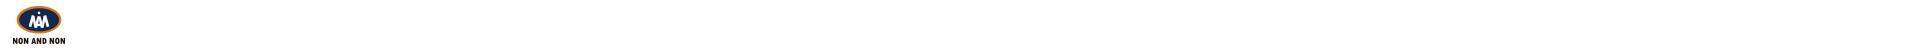 논앤논 로고